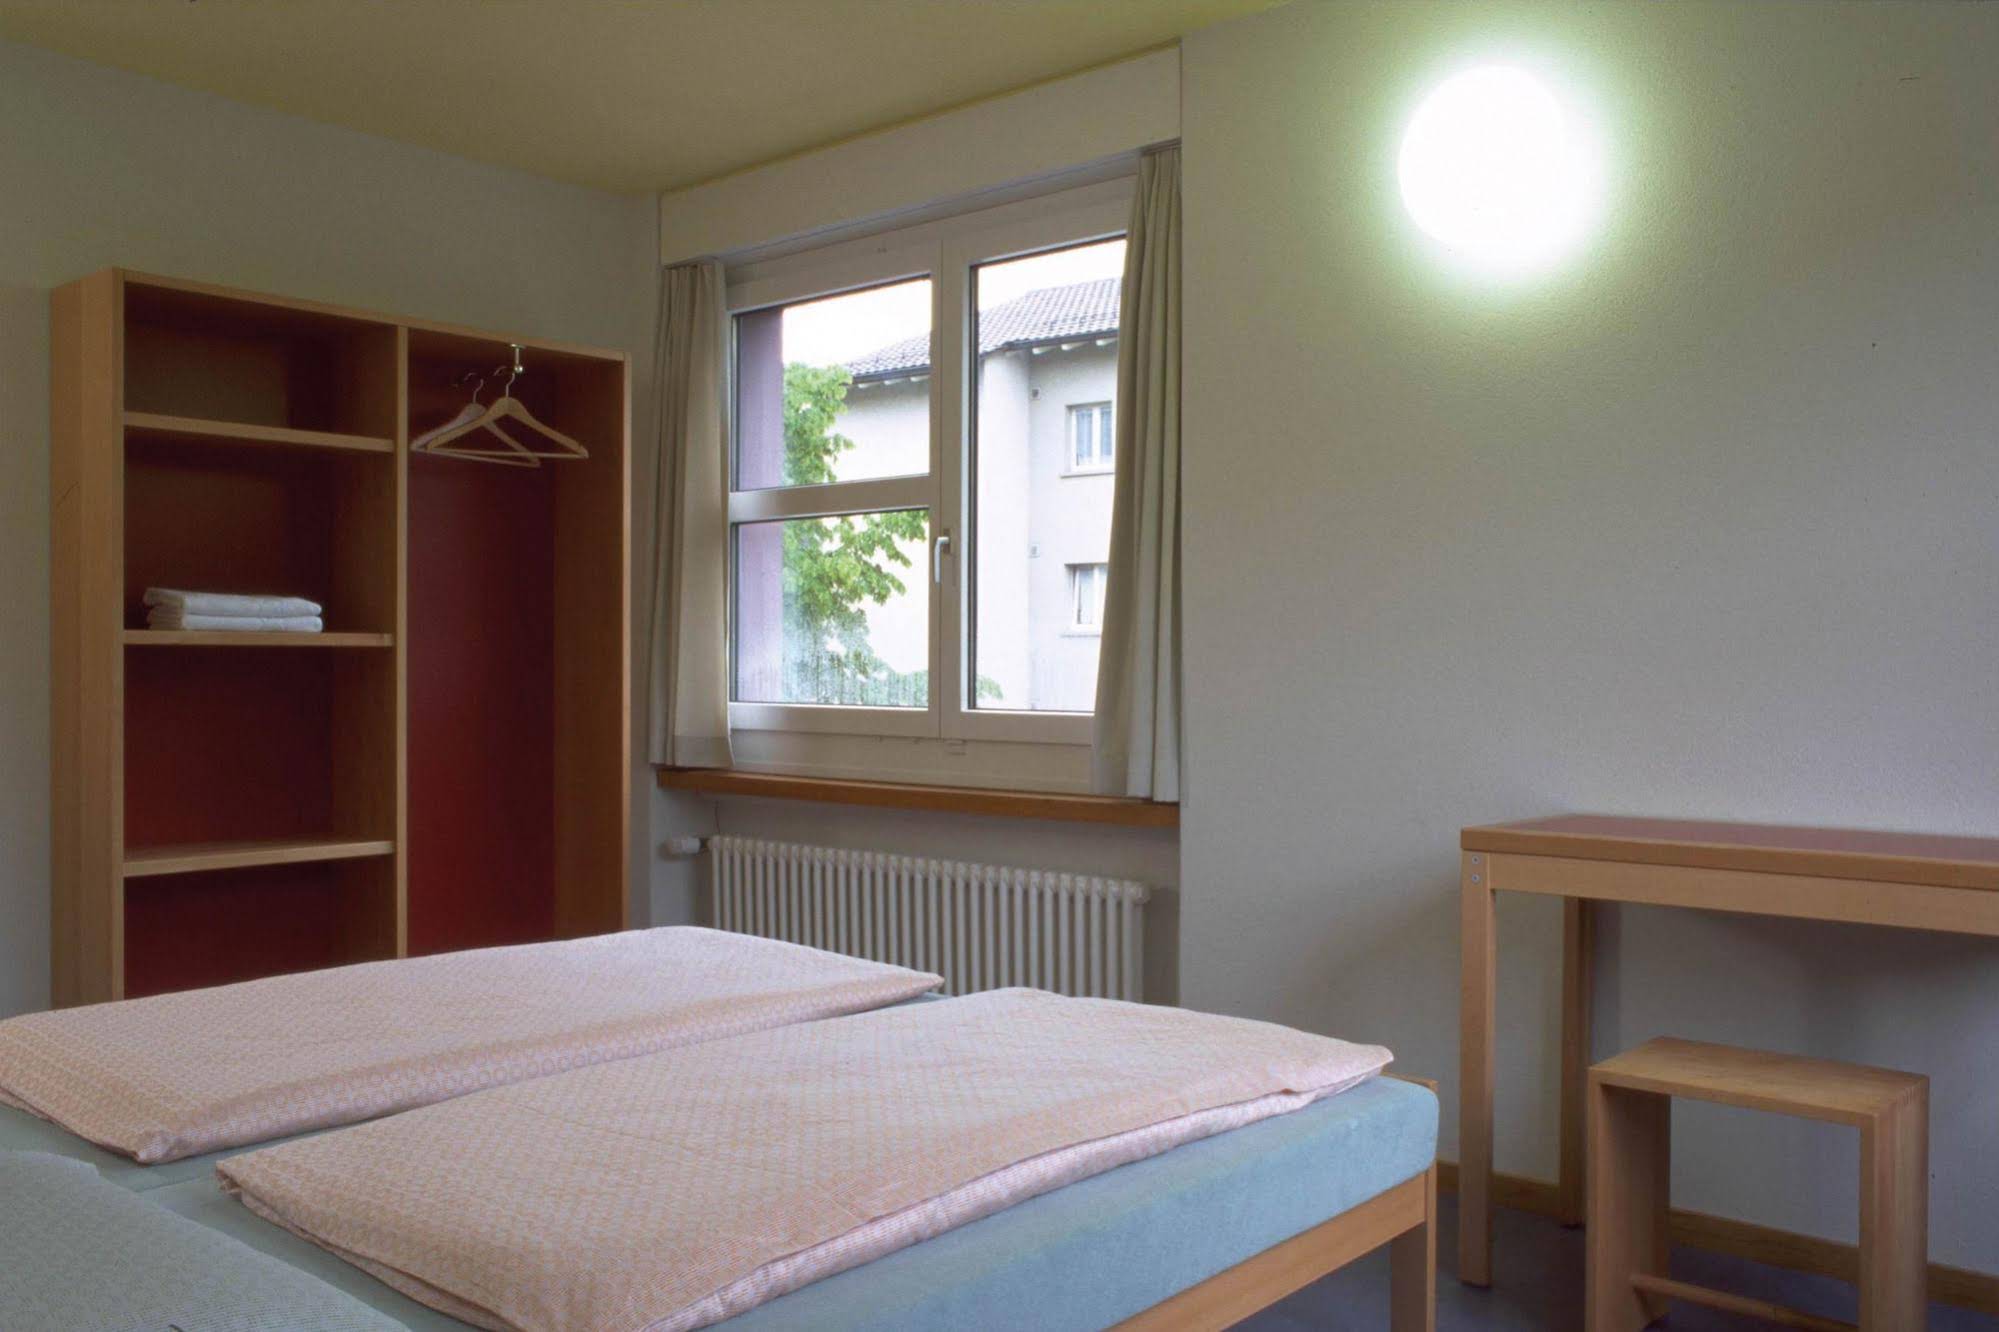 Zürich Youth Hostel